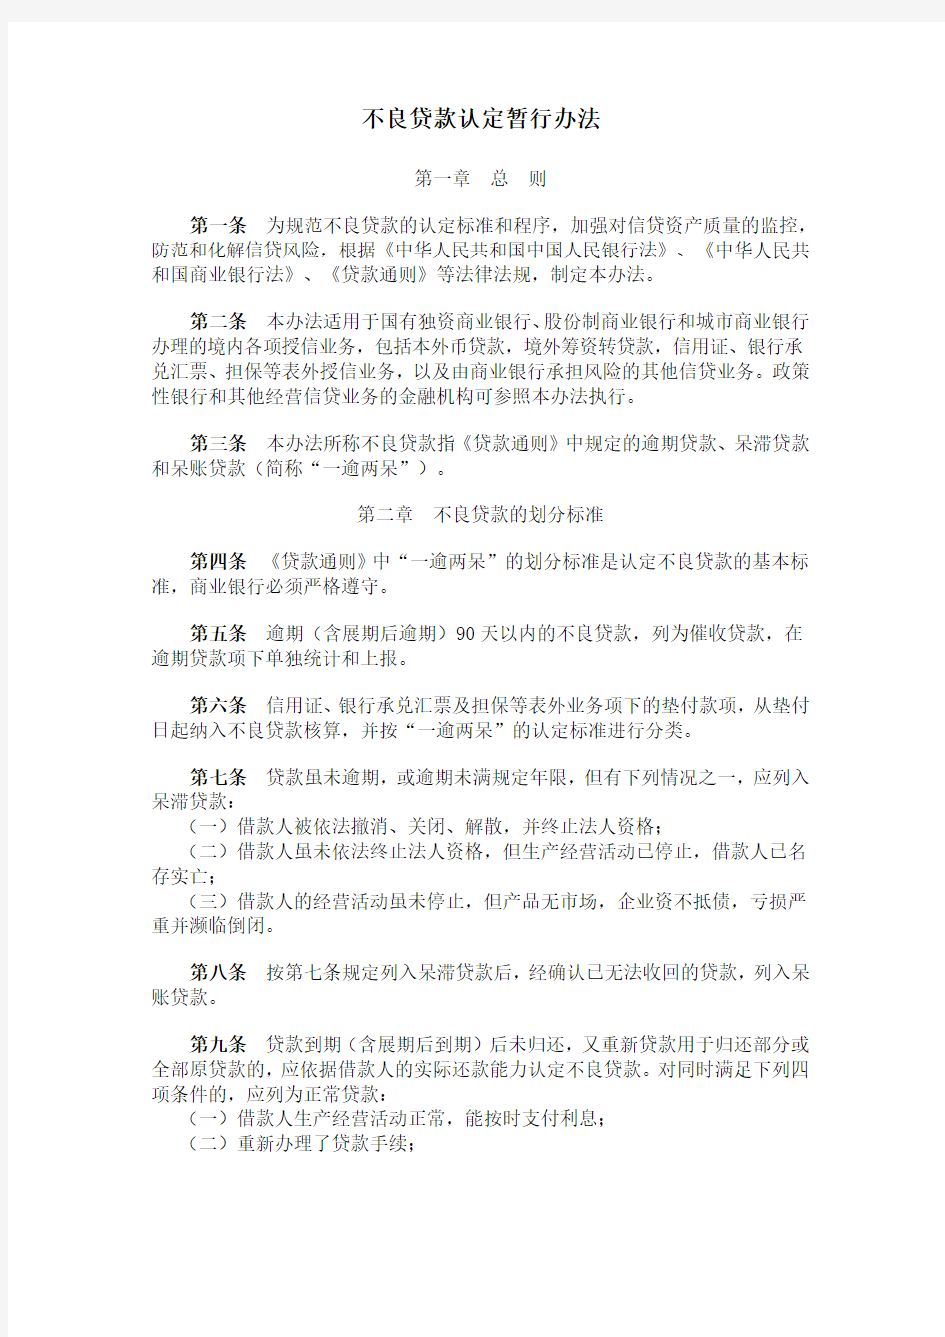 中国人民银行《不良贷款认定暂行管理办法》